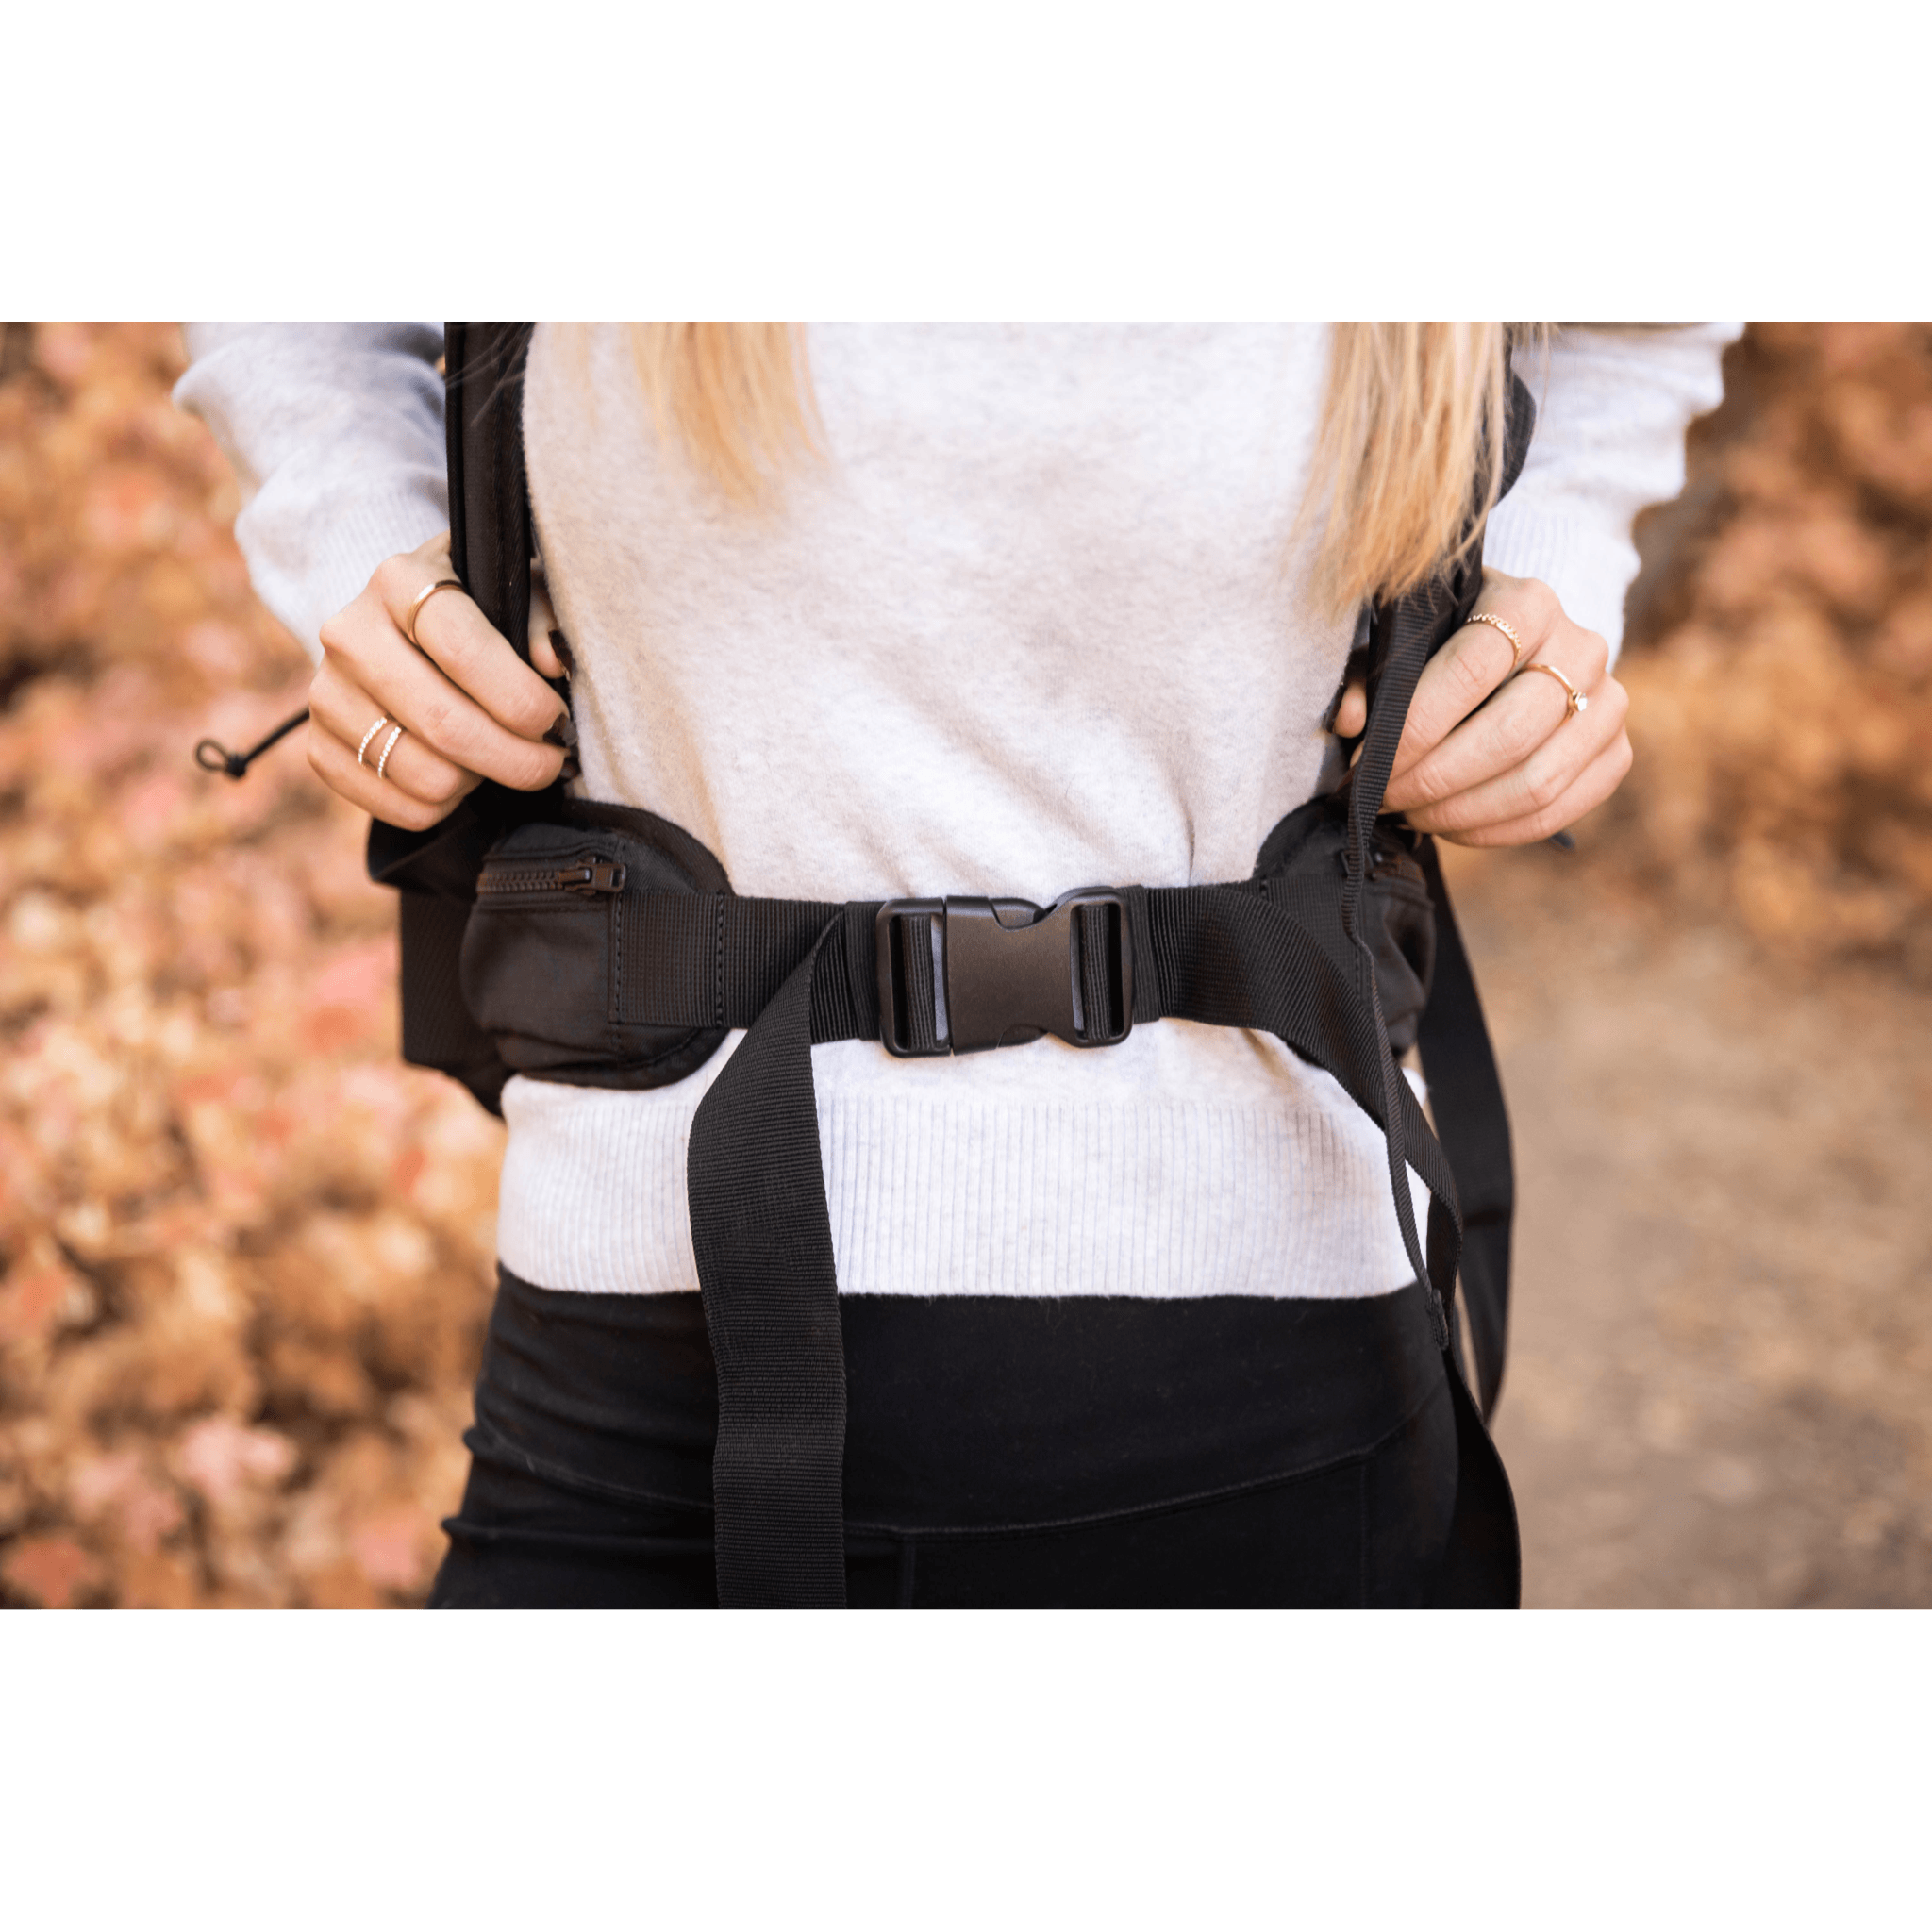 Knavigate waist belt dog carrier